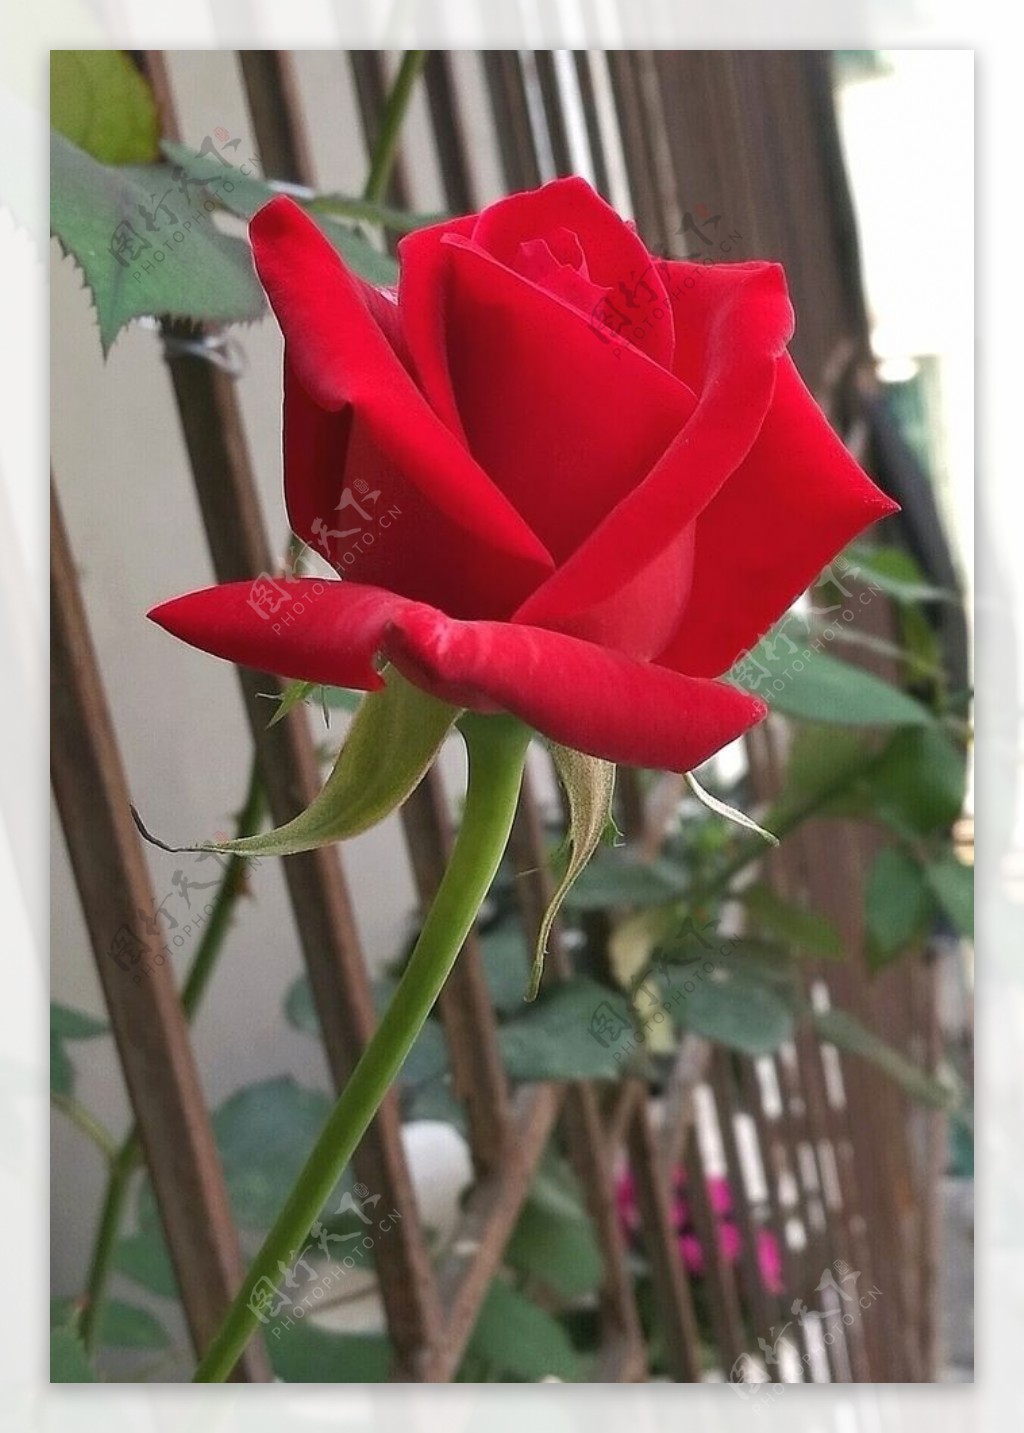 攀在栏杆外的红玫瑰